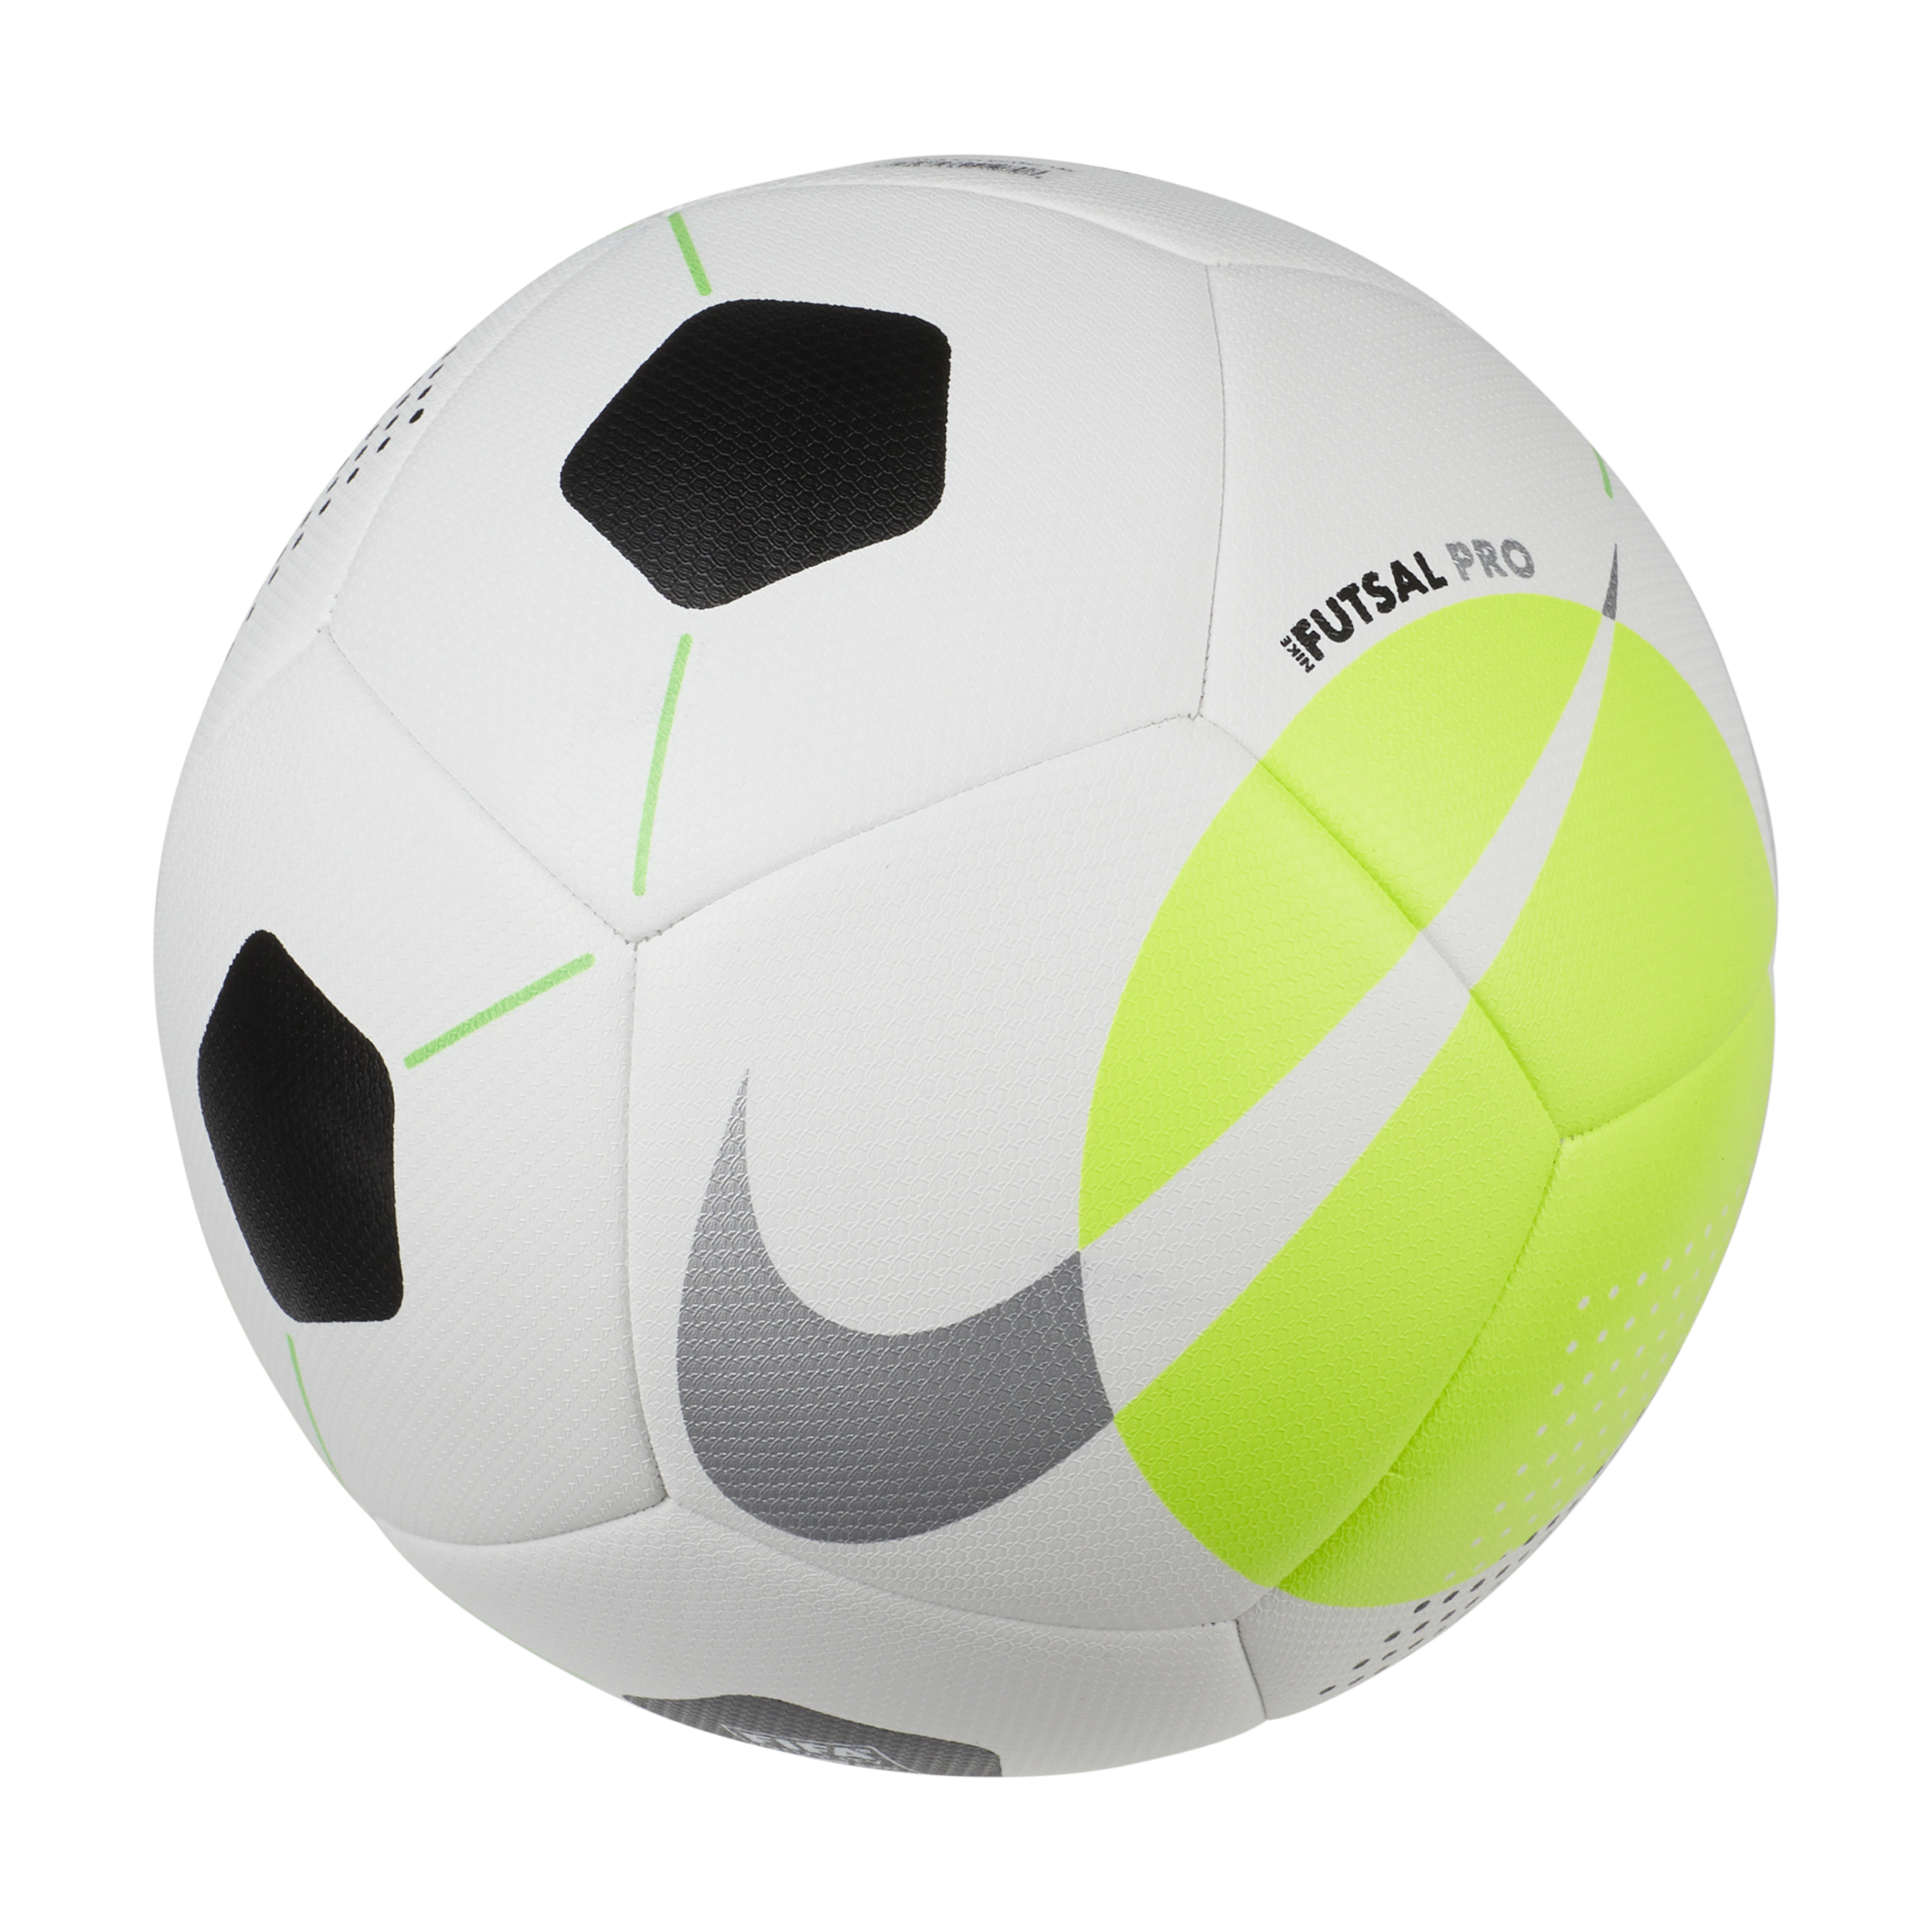 Nike Futsal Pro-fodbold - hvid